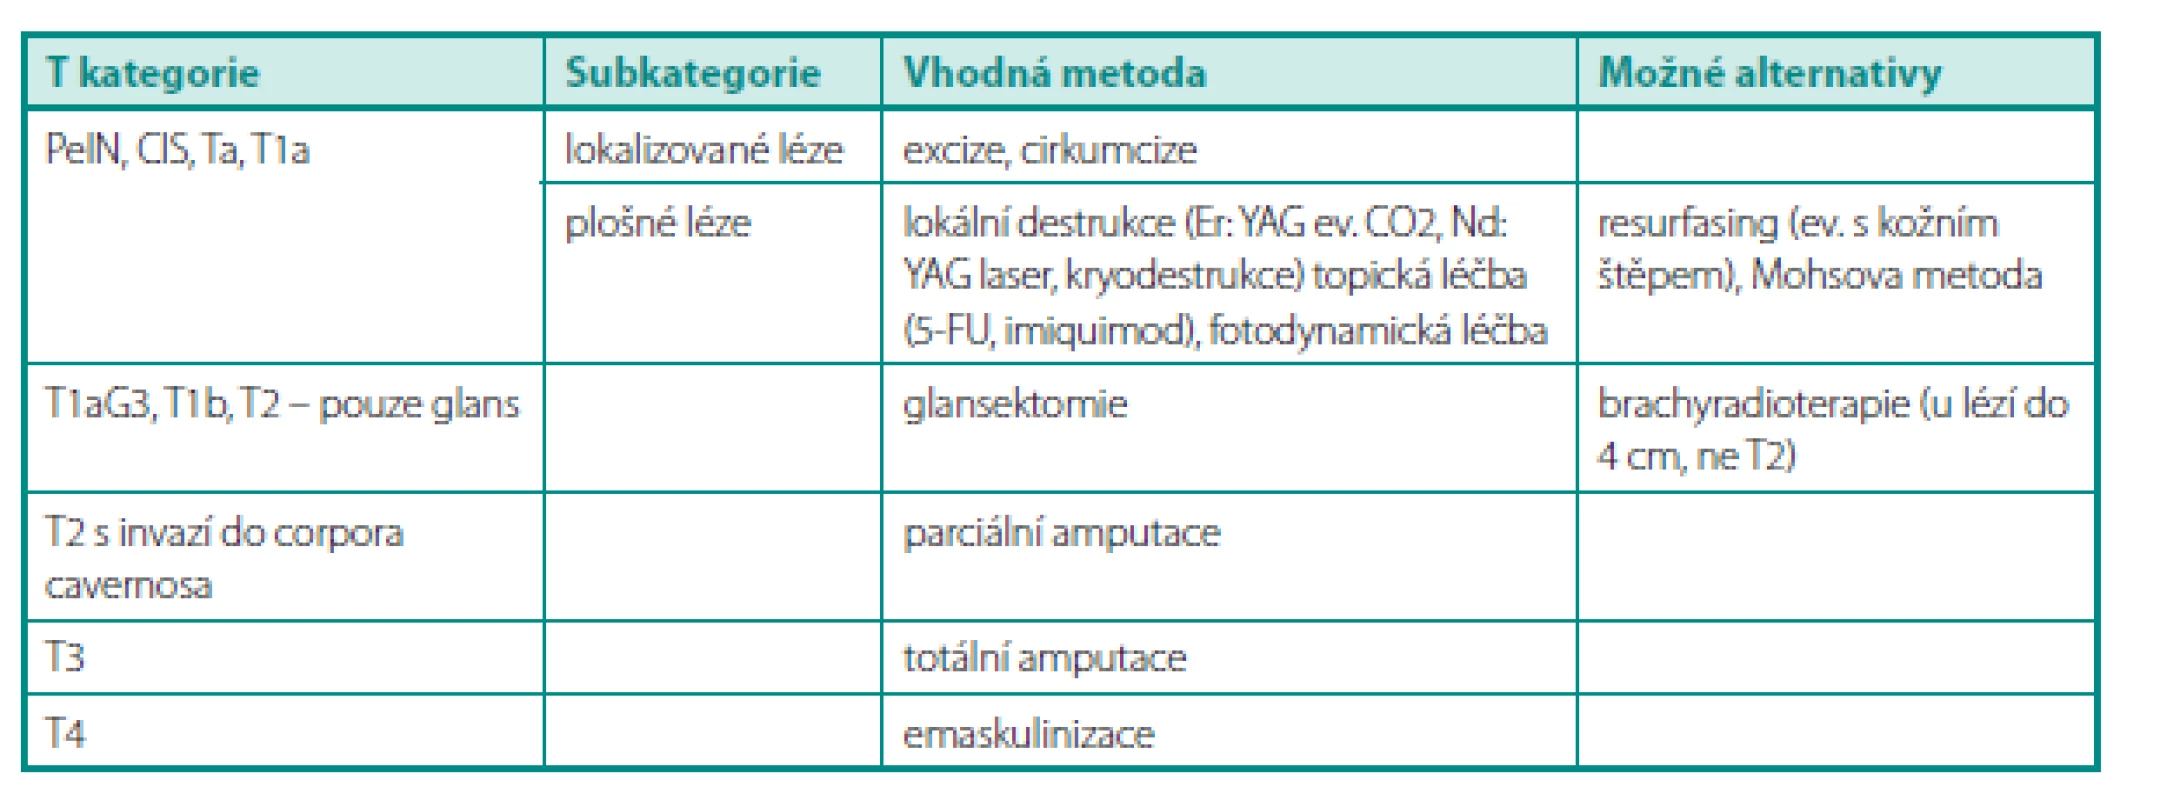 Přehled možností léčby primárního tumoru penisu dle T kategorie (TNM klasifi kace 2009, 7. vydání) (12)
Table 1. Summary of treatment possibilities of penile tumor by T category (12)